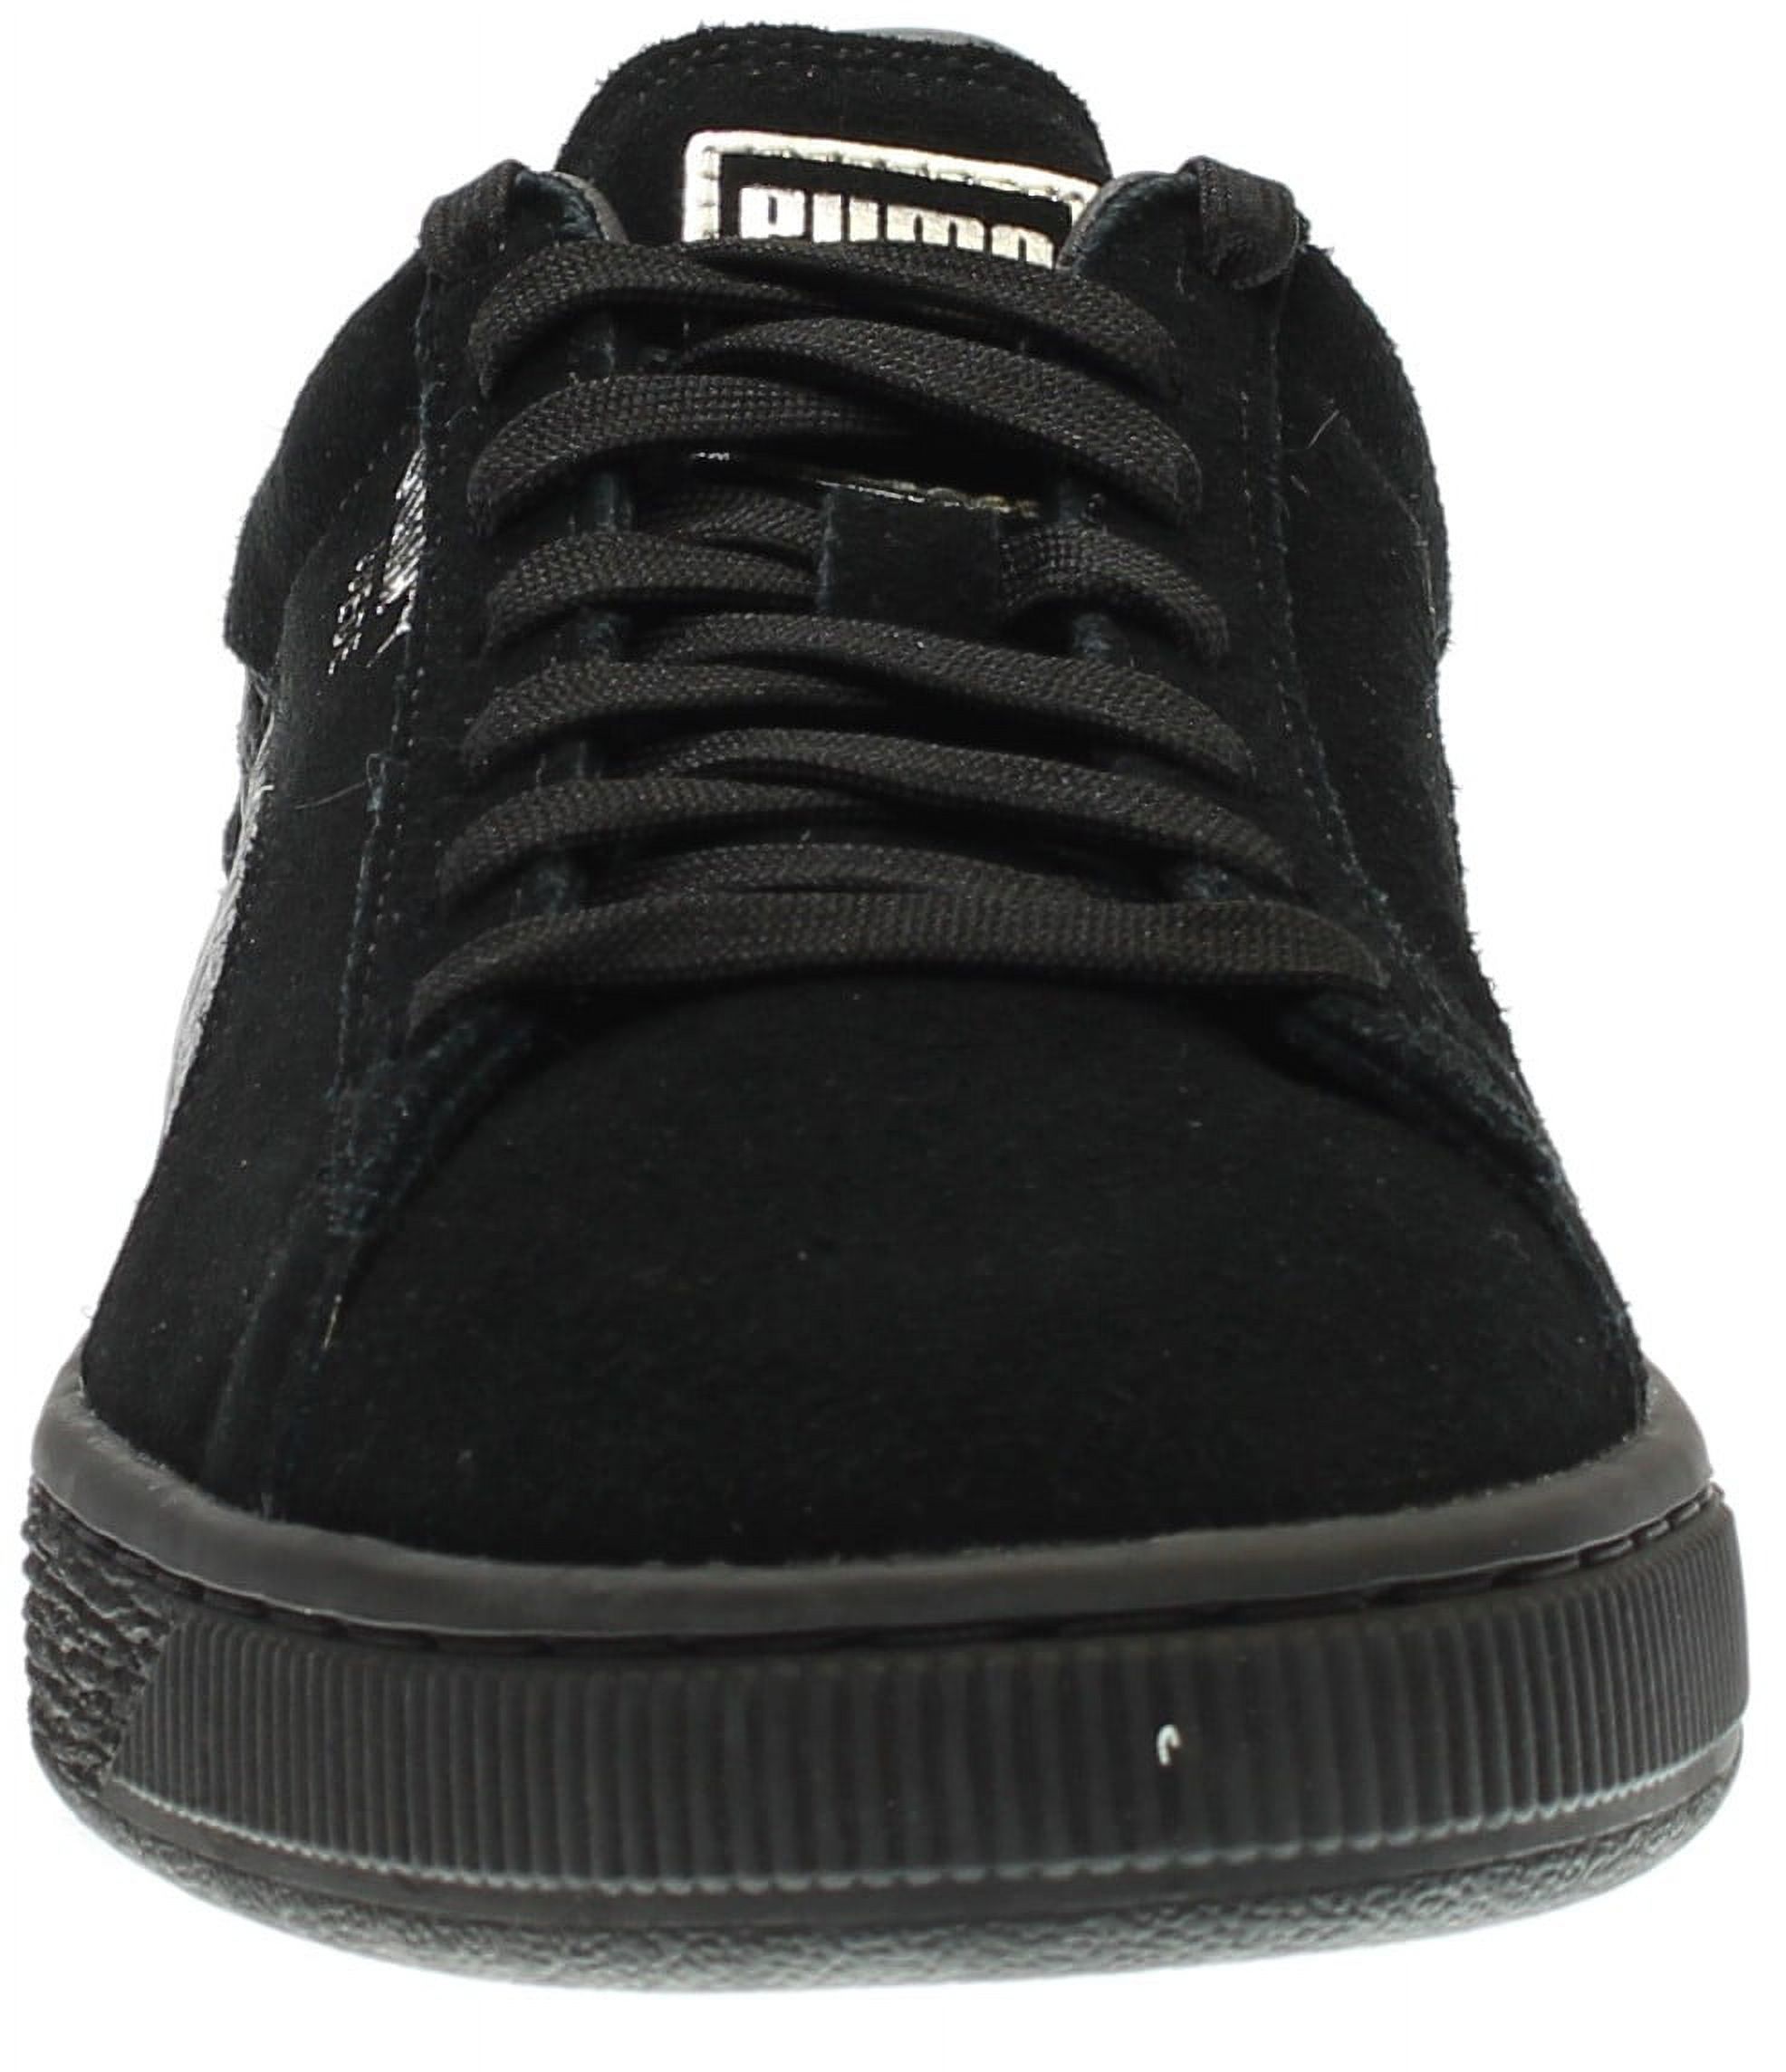 PUMA 363164-06 : Men's Suede Classic Mono Reptile Fashion Sneaker, Black (Puma Black-puma Silv, 9 D(M) US) - image 5 of 7